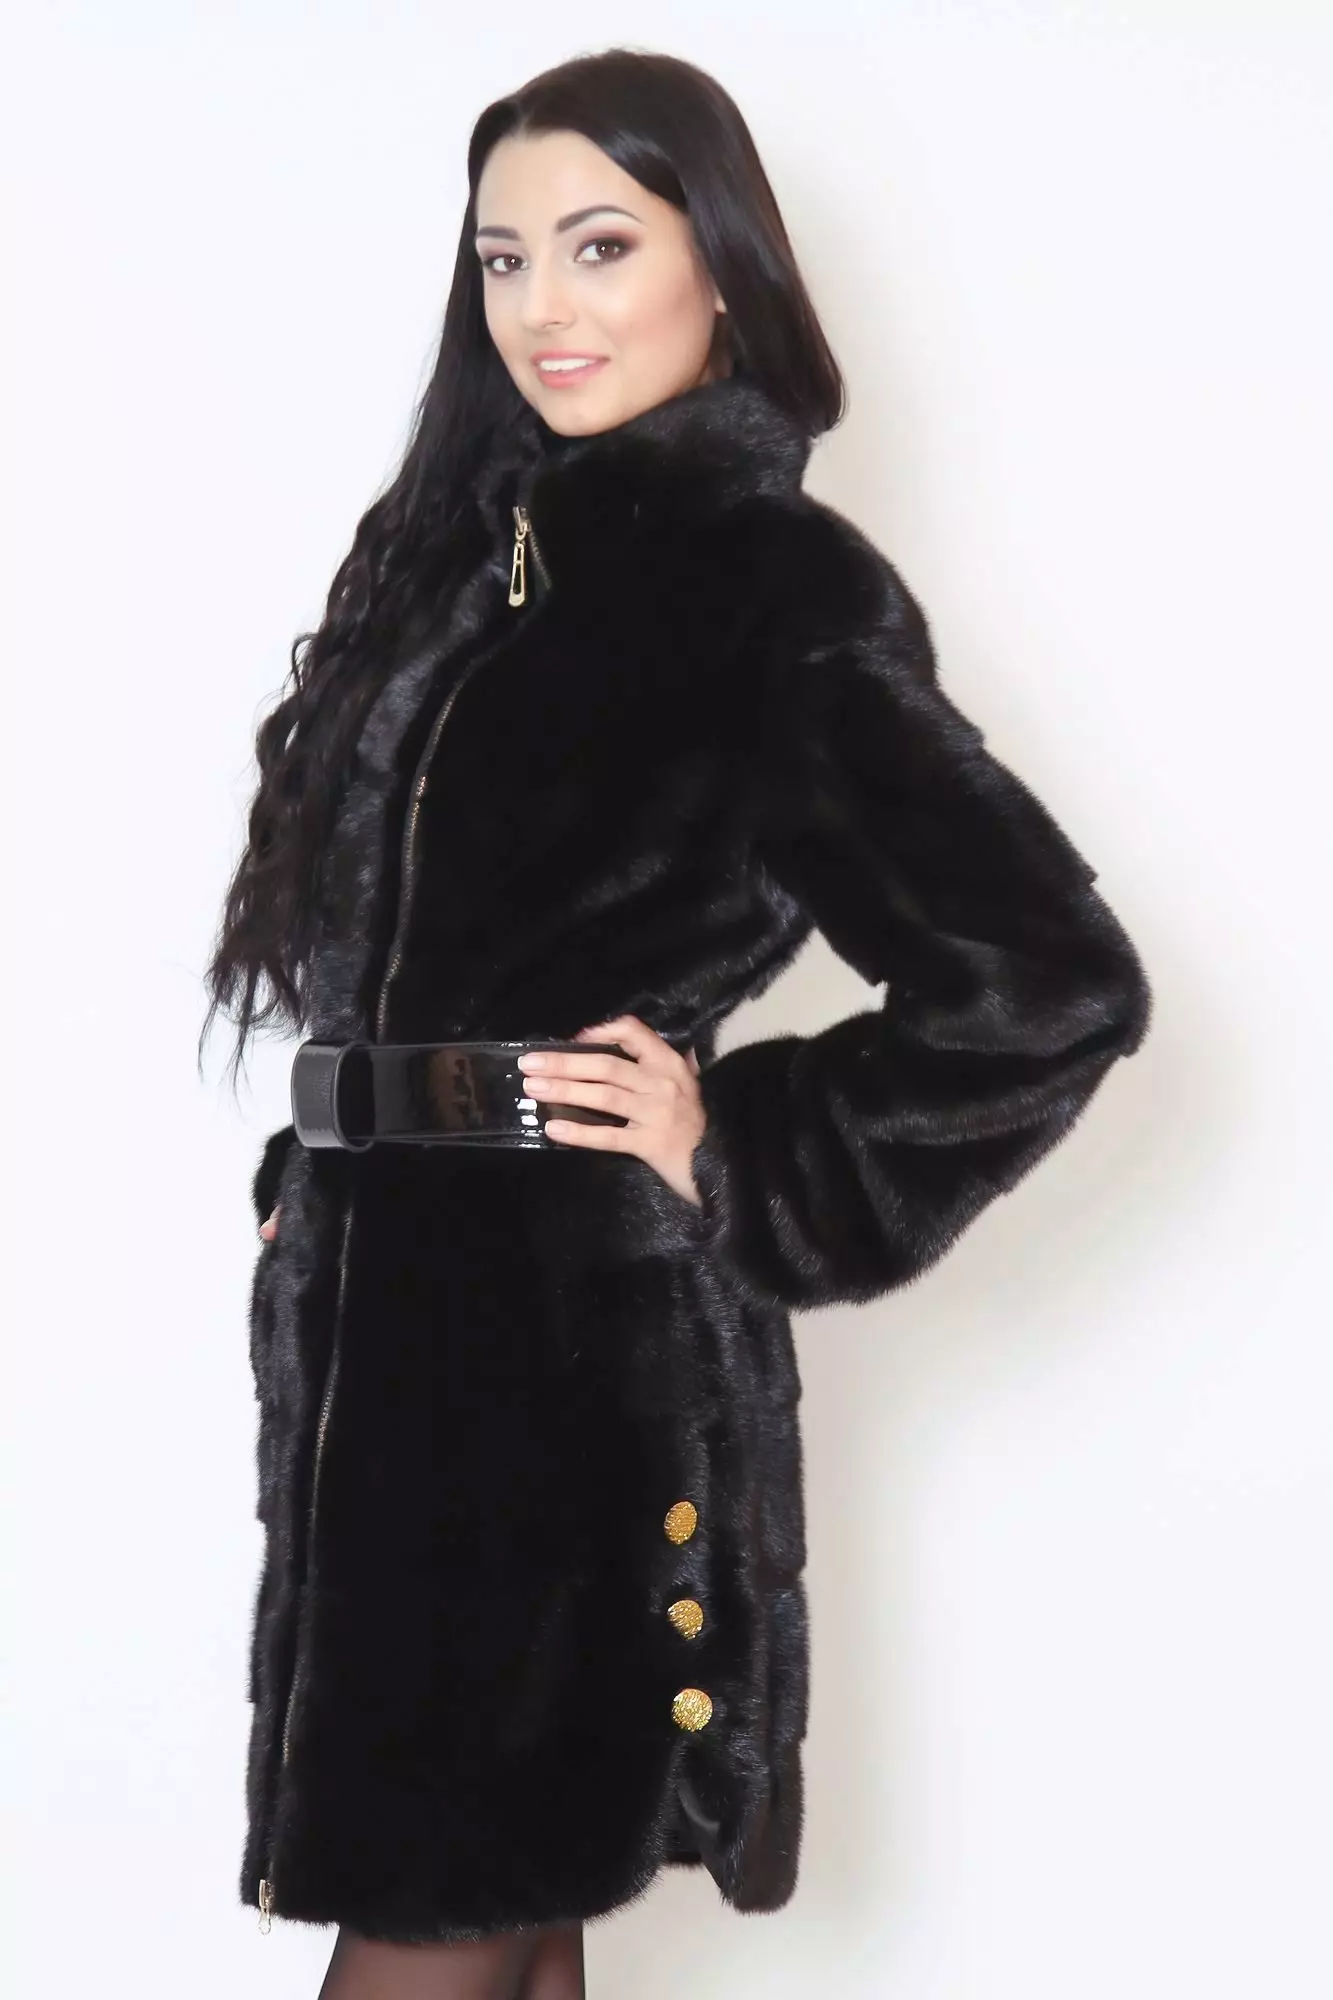 Black Fur Coat (63 sary): Colors Diamond, Long, mainty ary volo, vehivavy volom-borona avy amin'ny volom-borona mainty misy satroka, misy kiraro mena 691_45